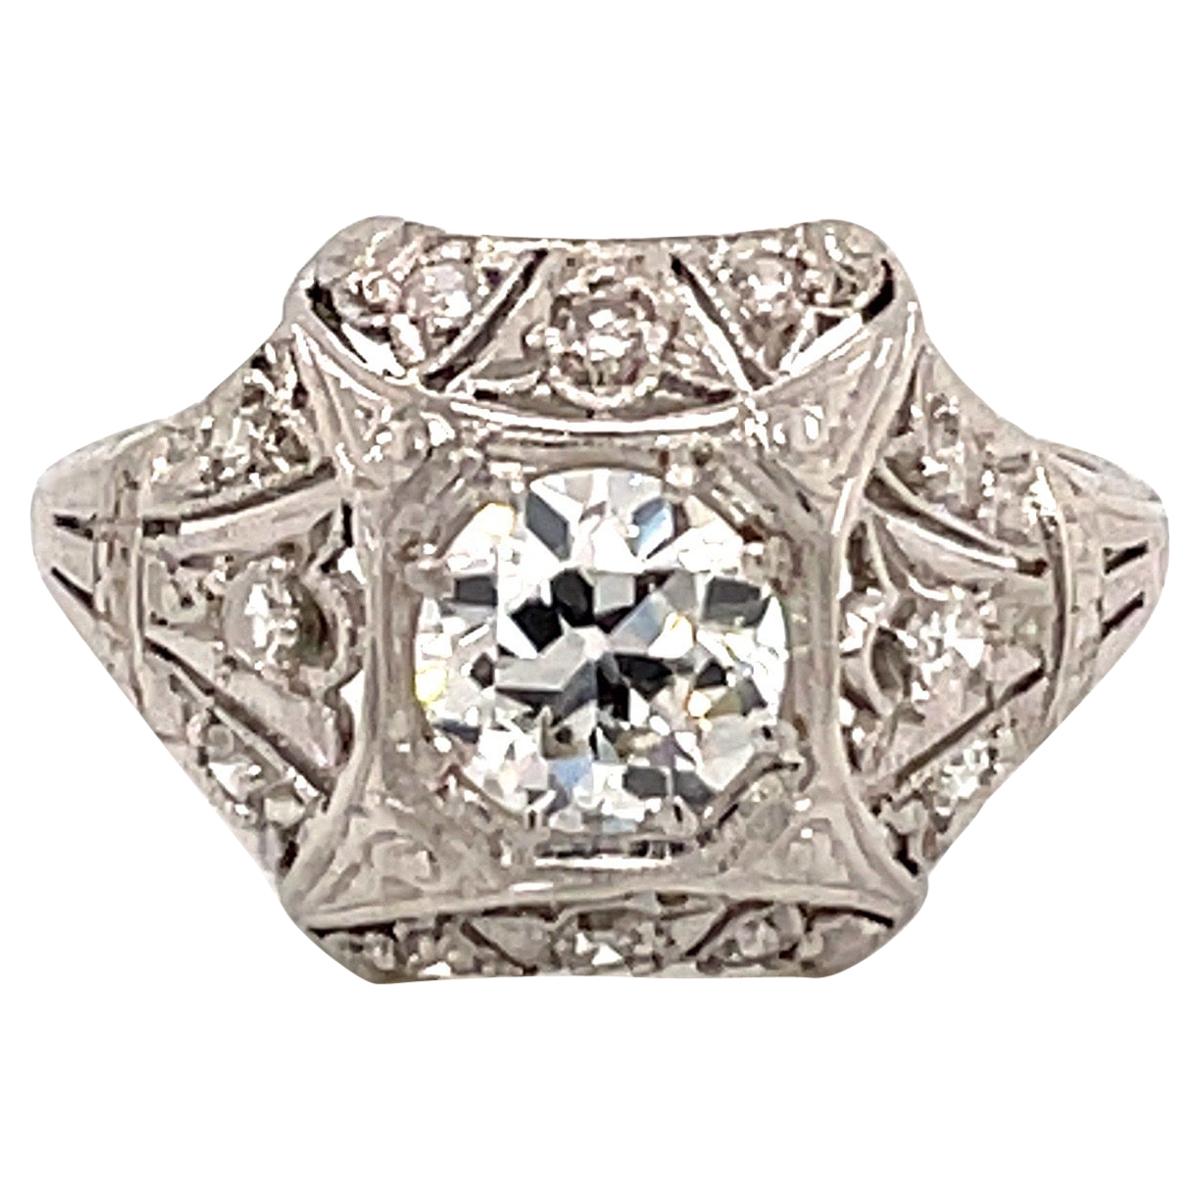 Antique 1920s Platinum Diamond Engagement Ring .74 Carat